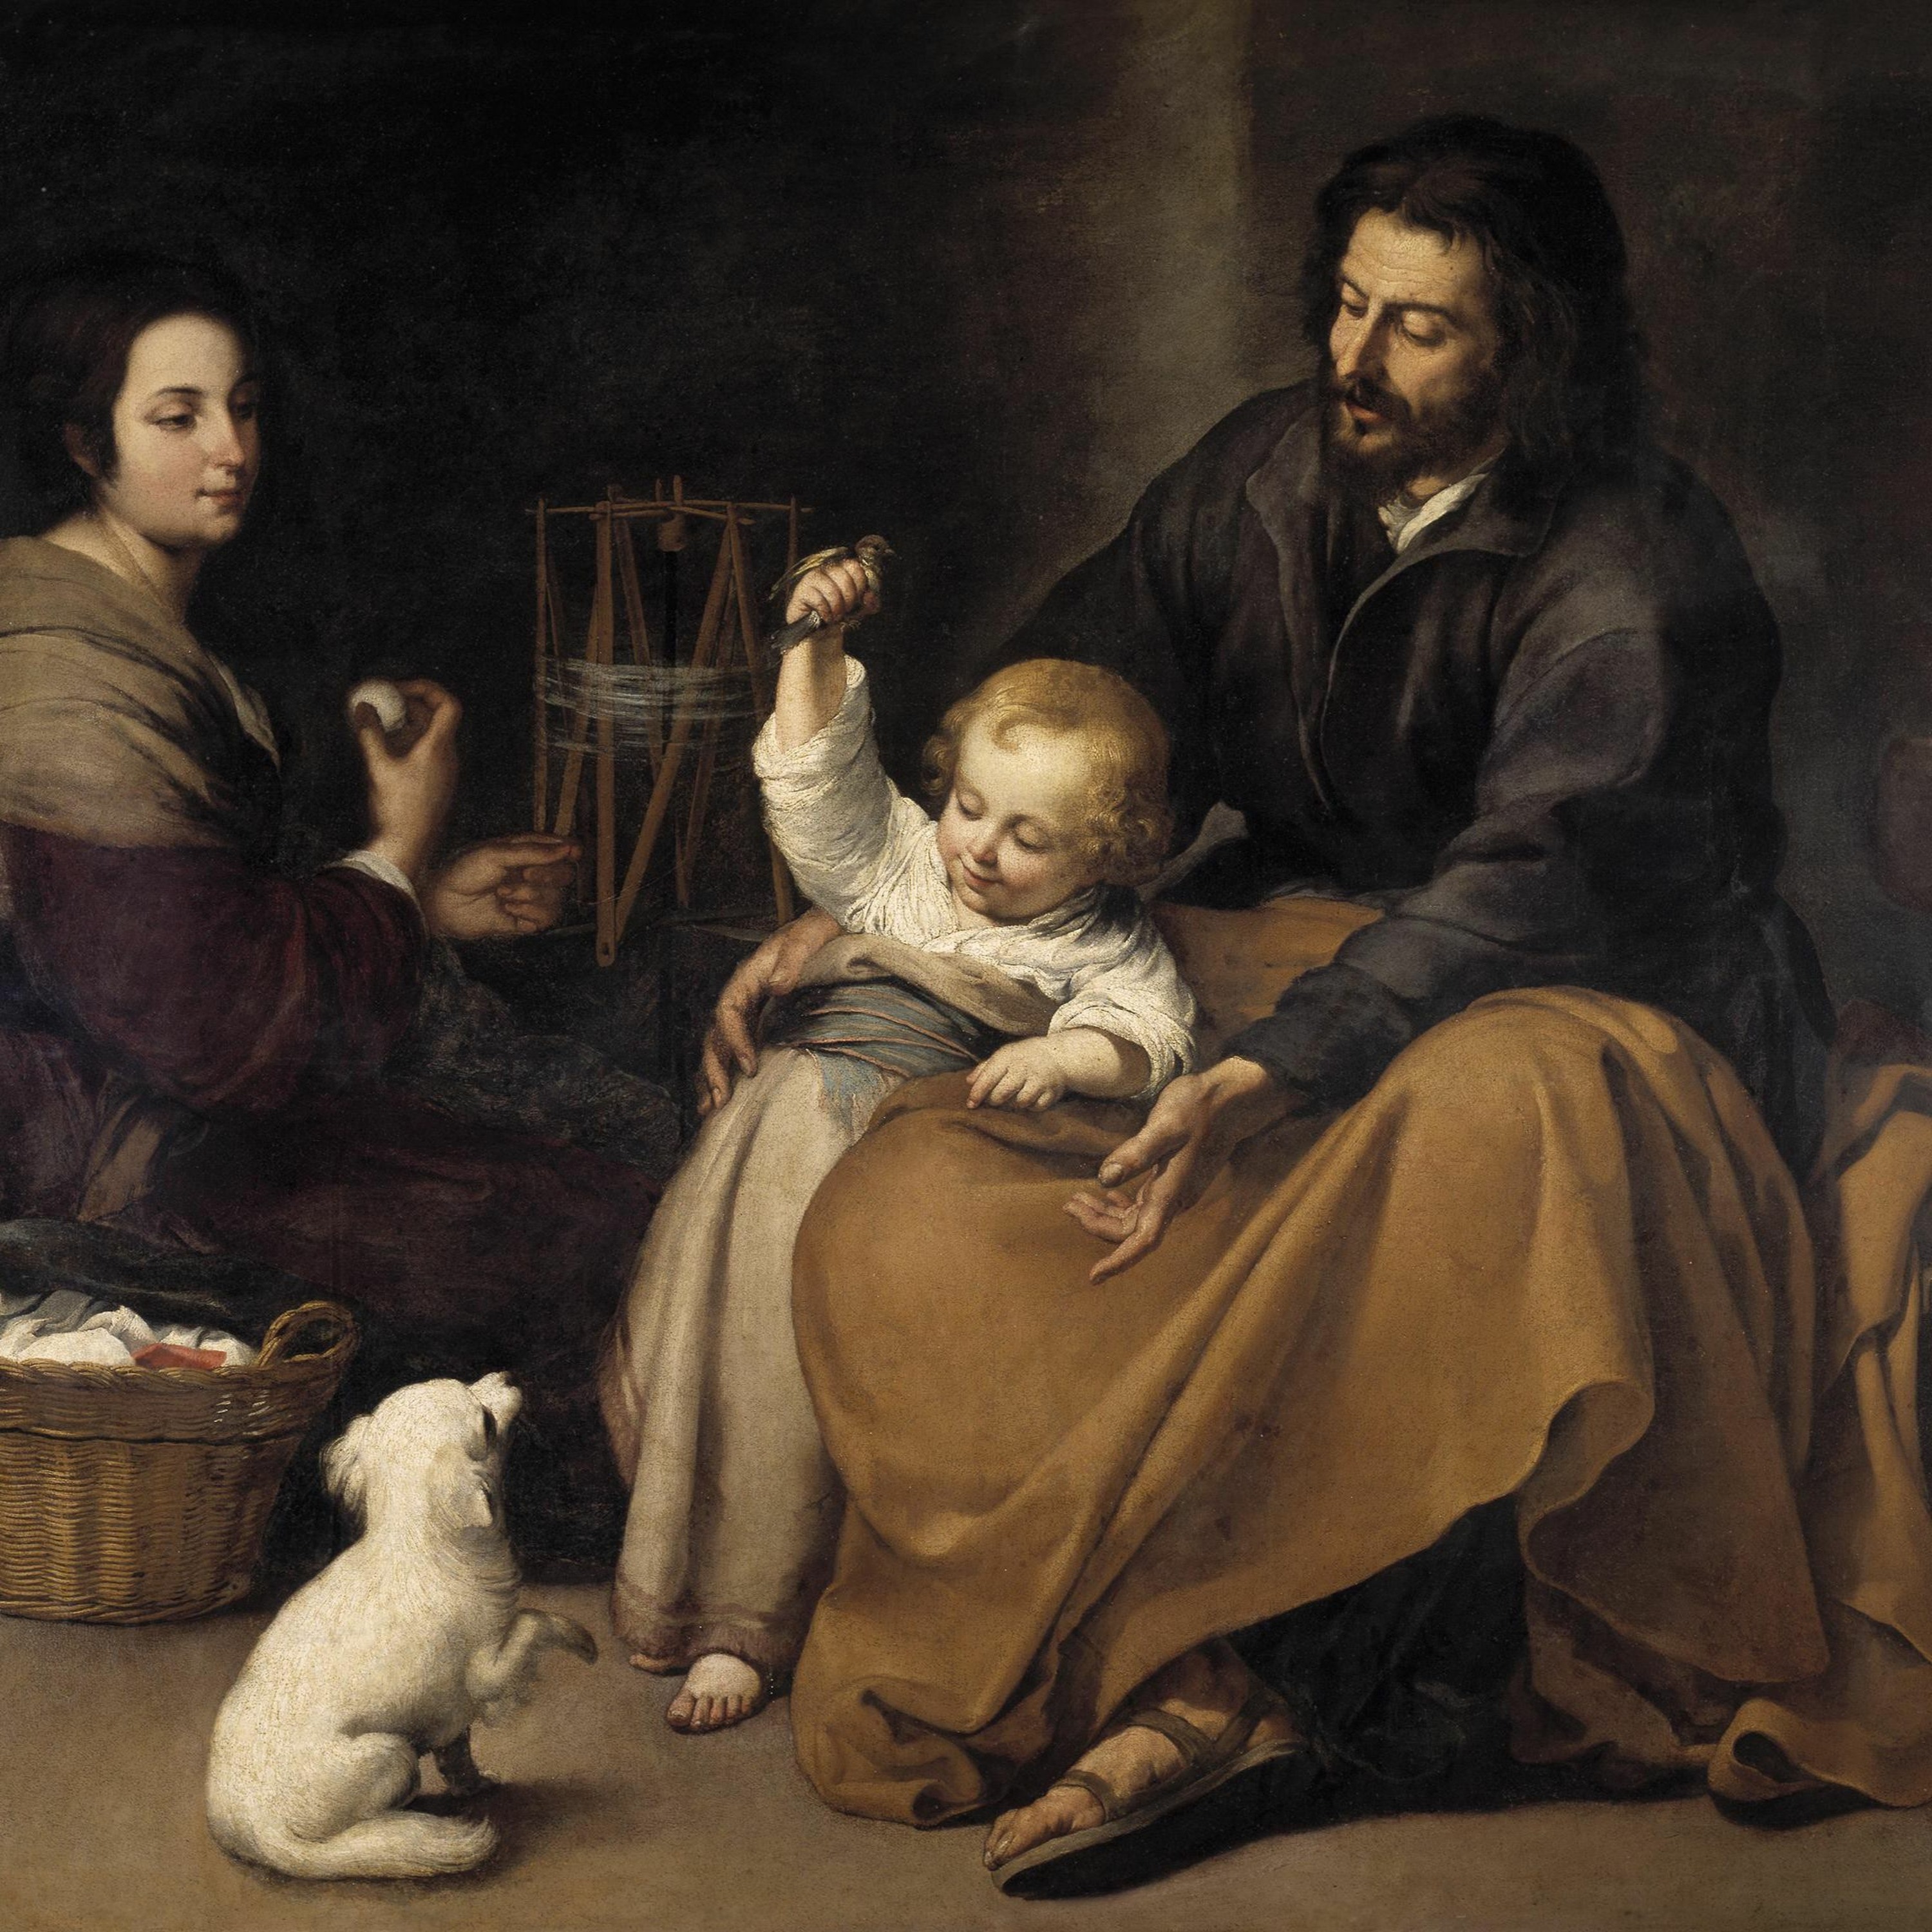 Elizabeth Lev - A Good Man Is Hard to Find: St. Joseph in Art